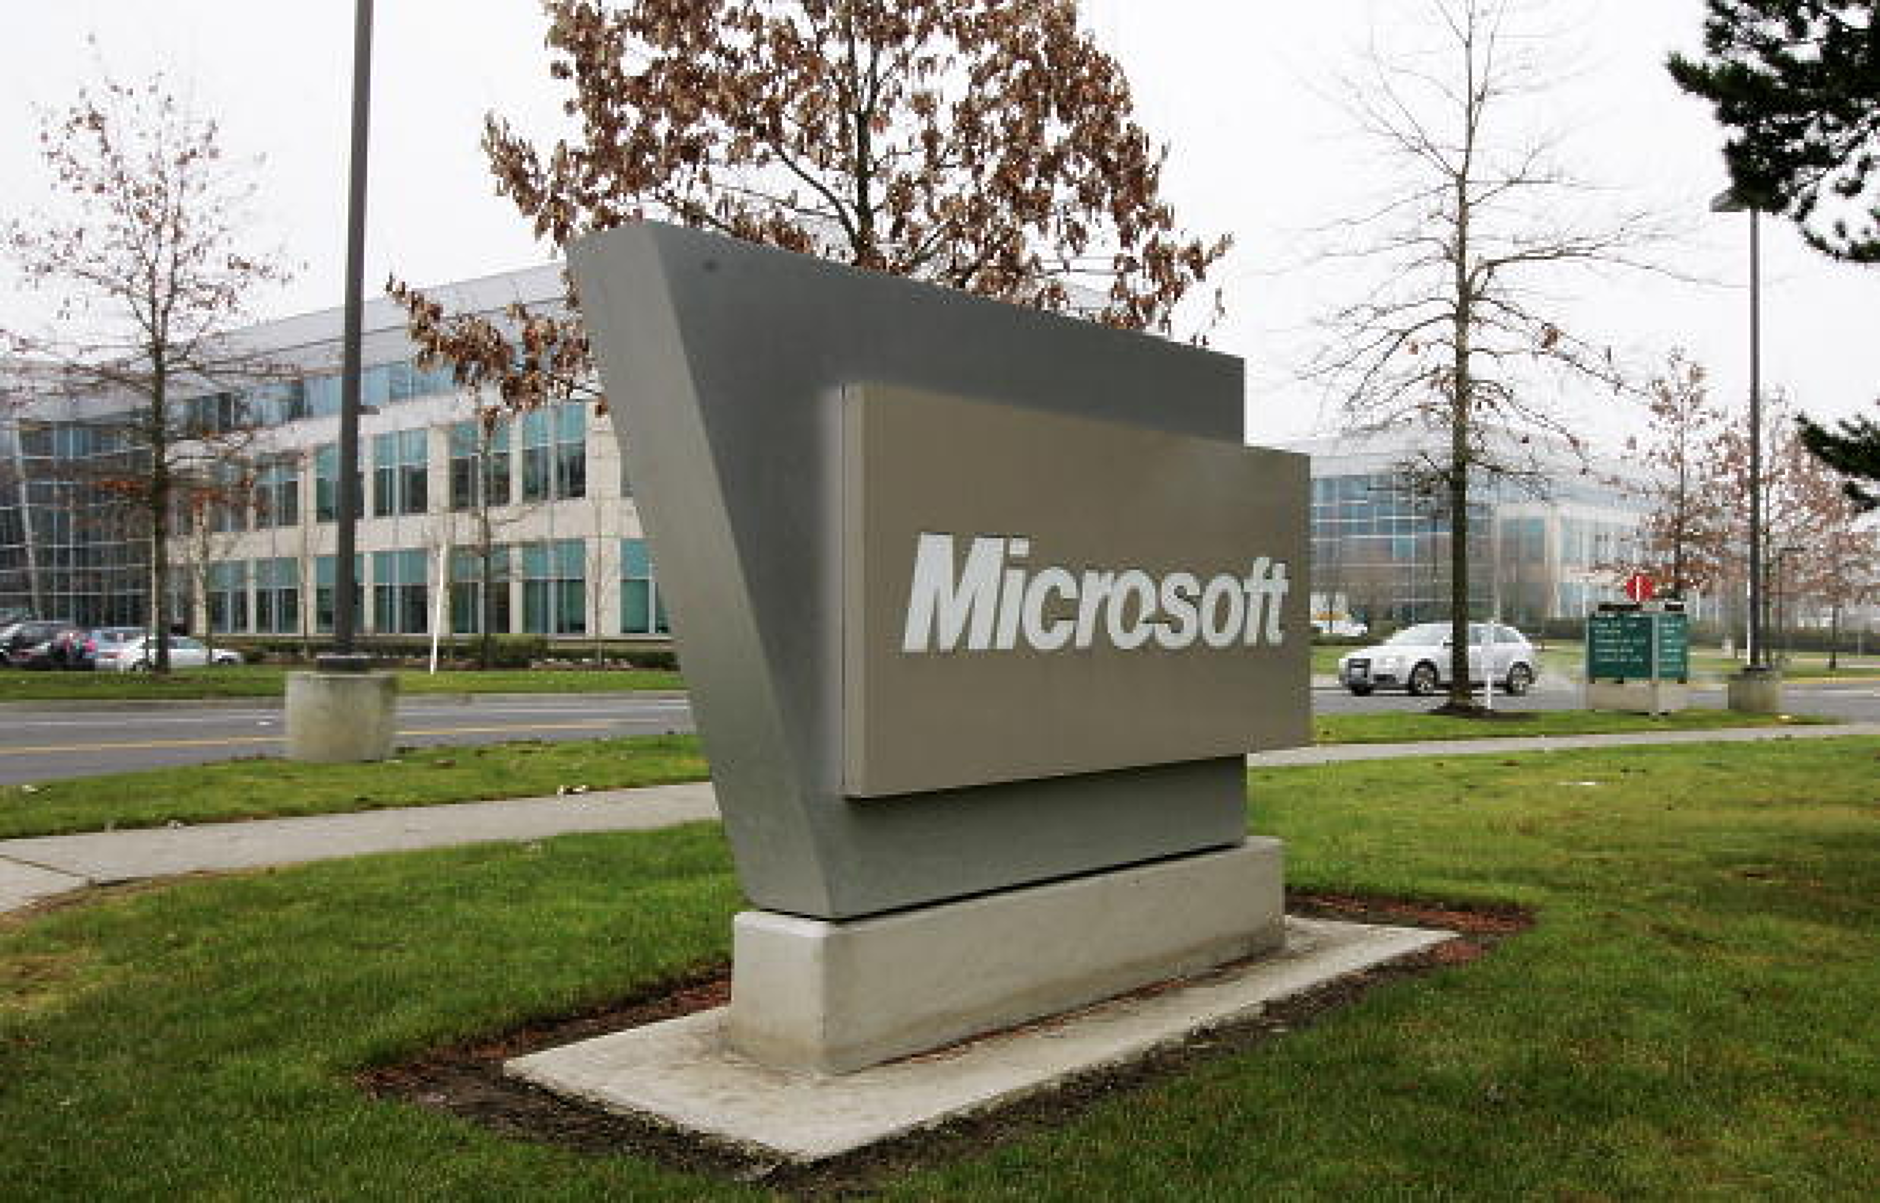 Microsoft плаща глоба от 20 милиона долара за незаконно събиране на данни на деца